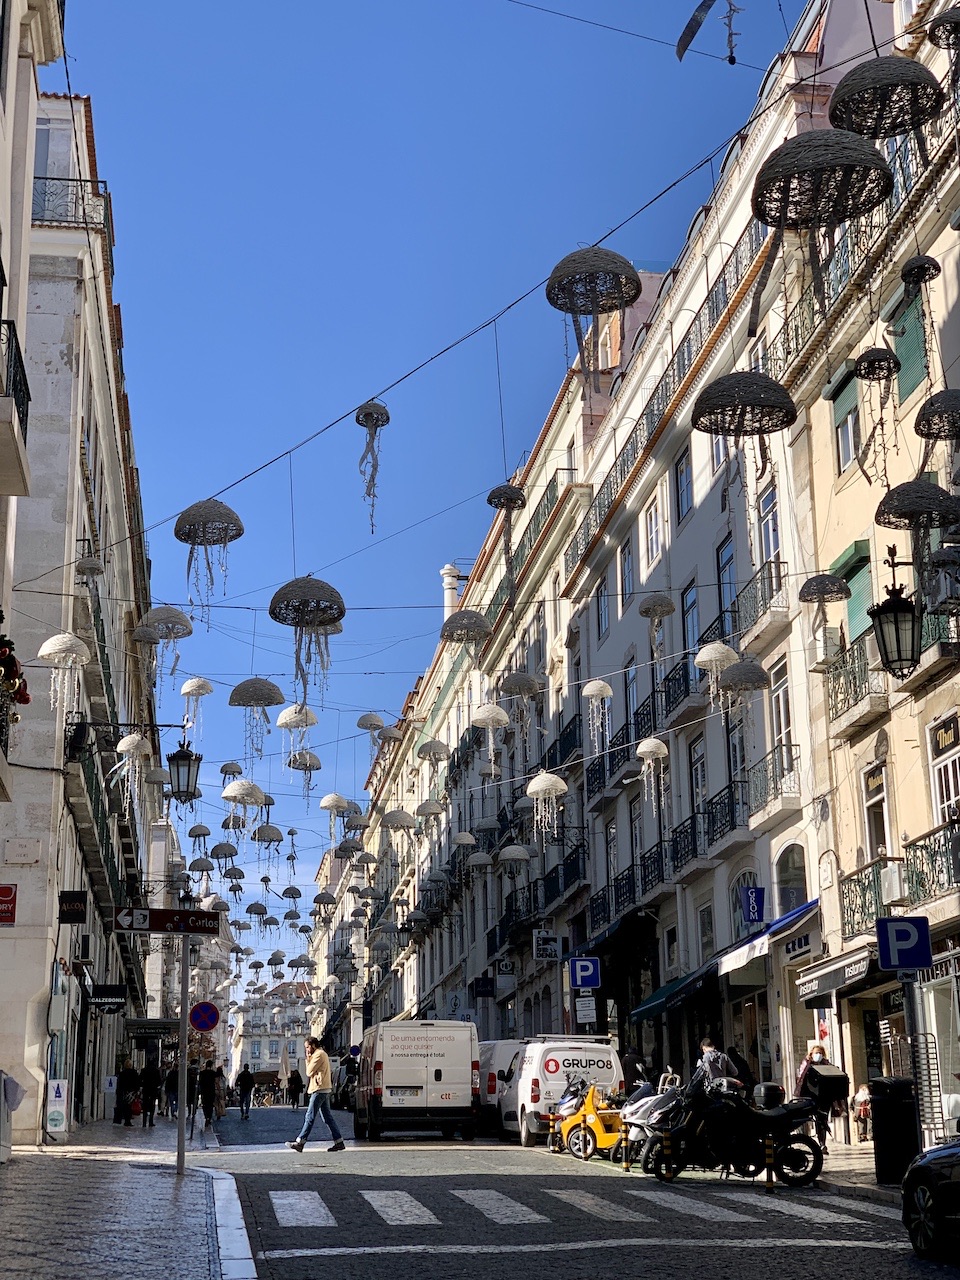 Strolling Central Lisbon